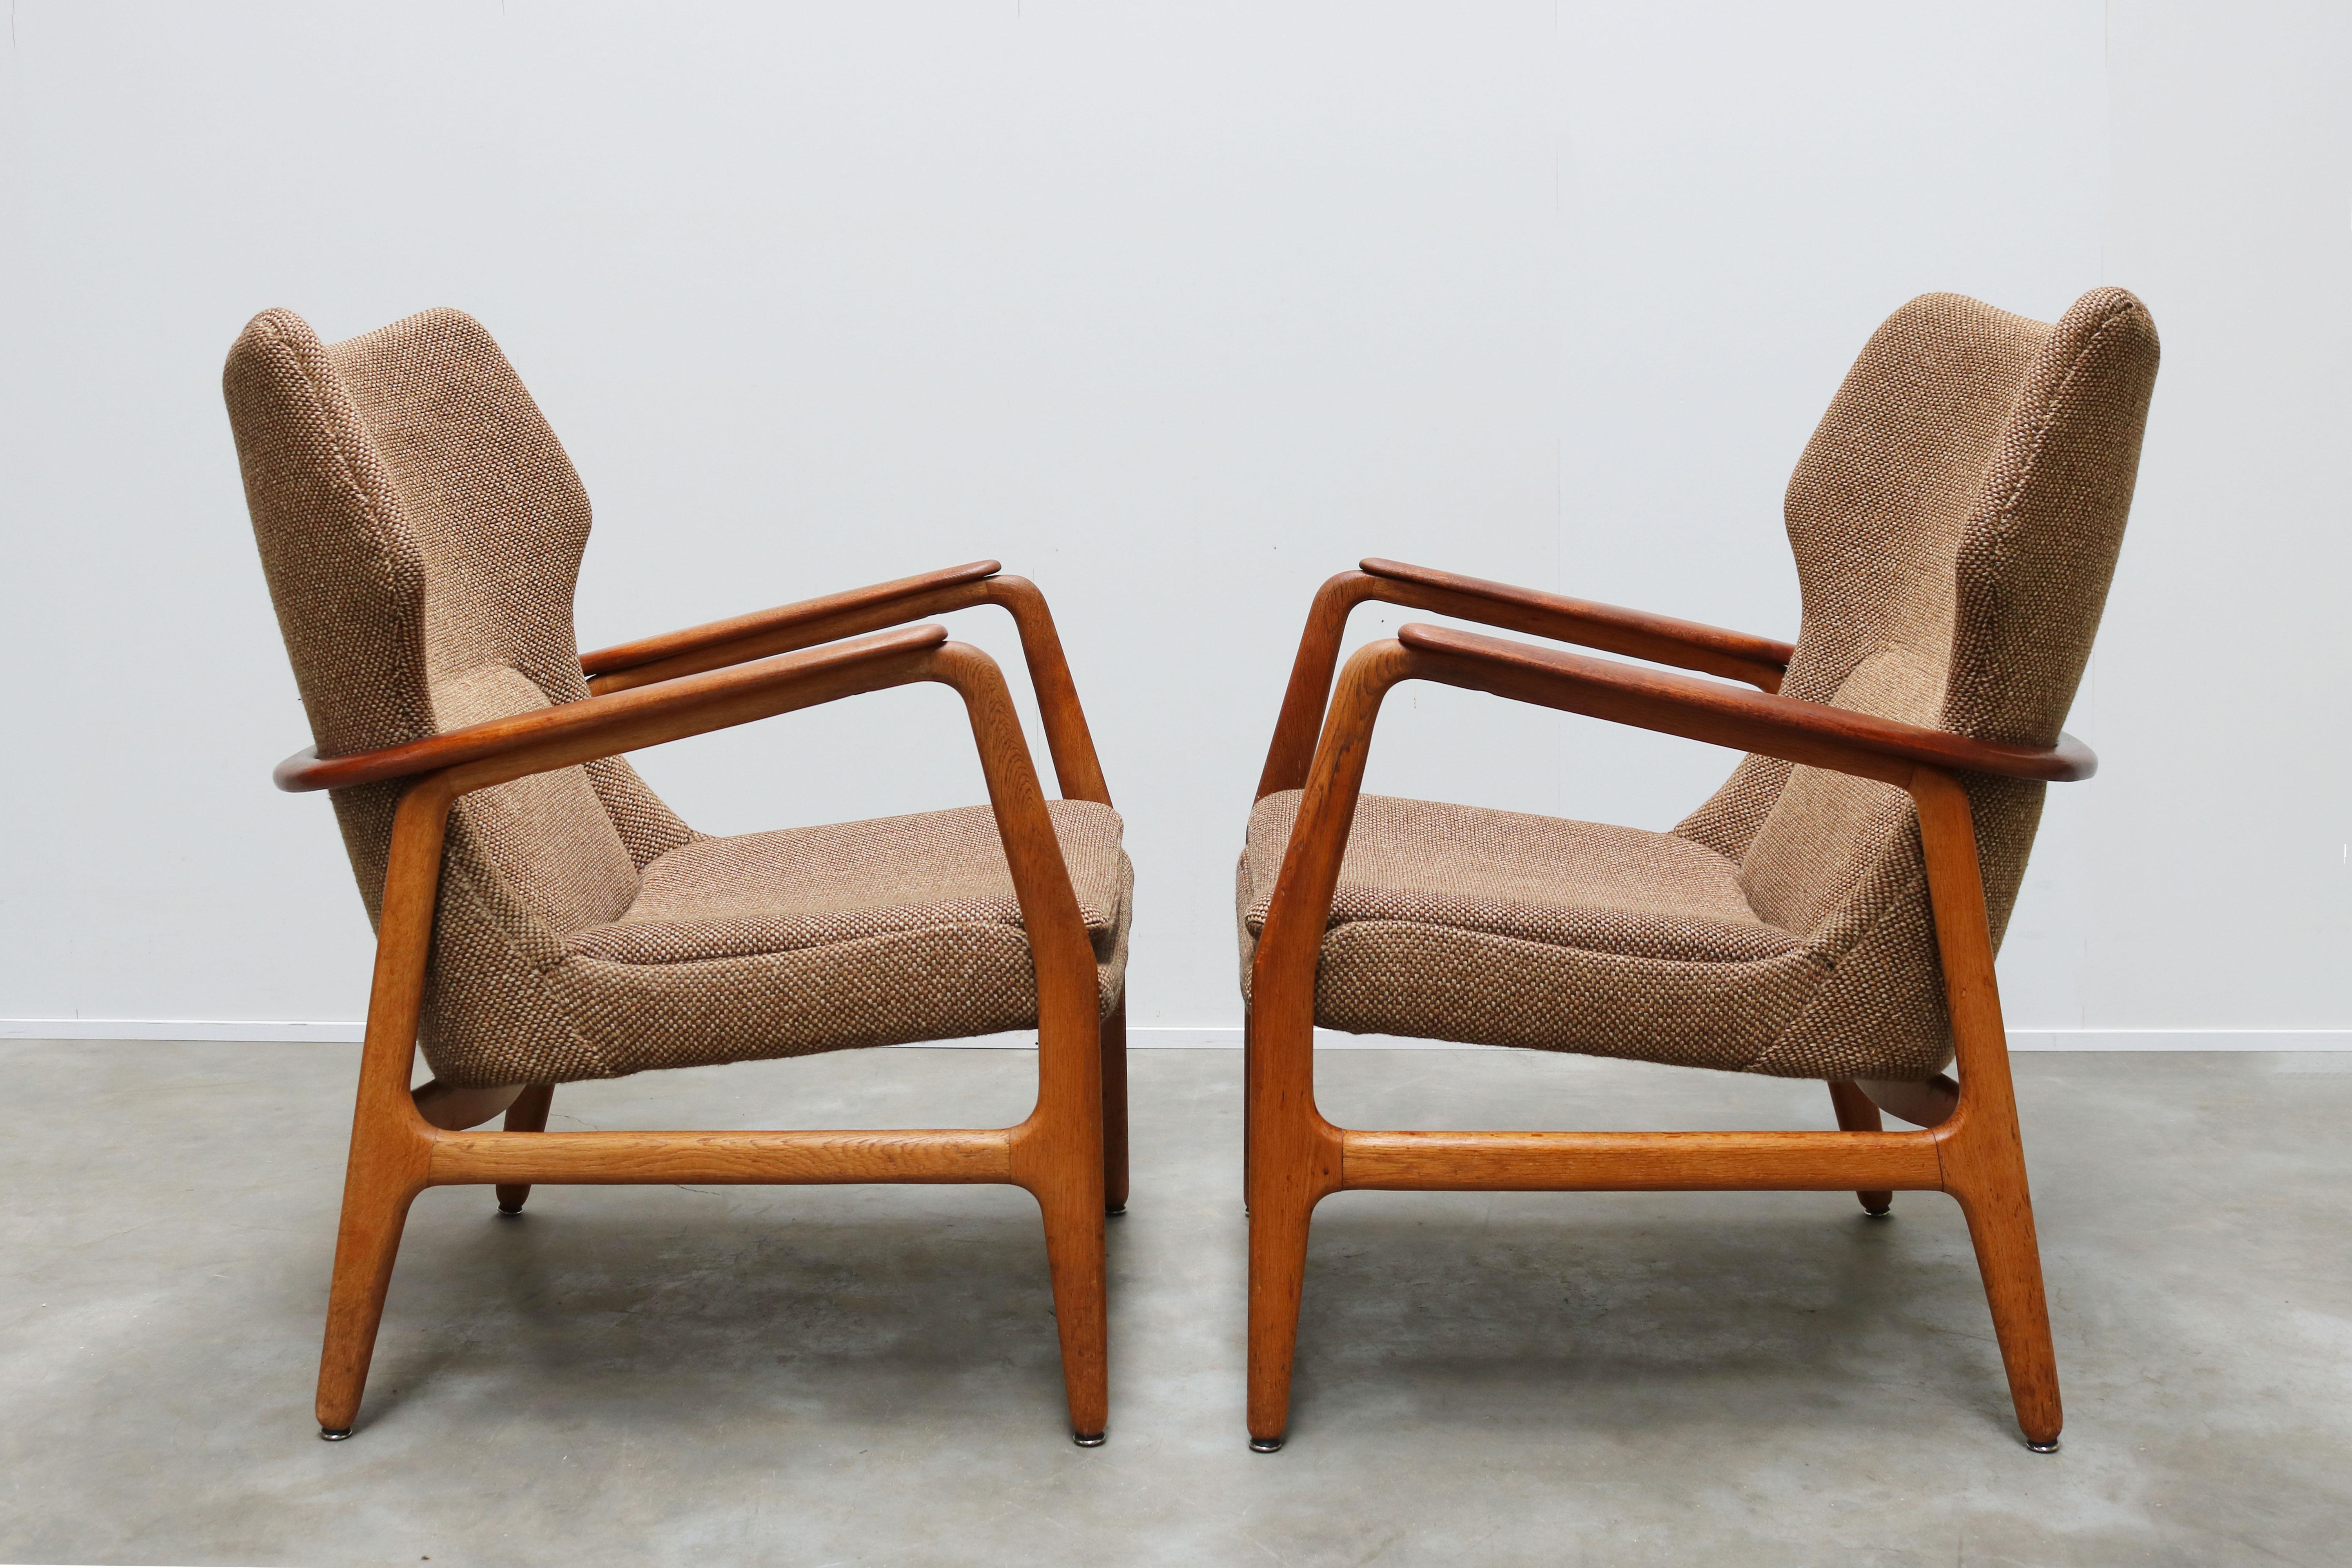 Mid-20th Century Pair of Danish Lounge Chairs by Aksel Bender Madsen 1952 Bovenkamp Teak Brown